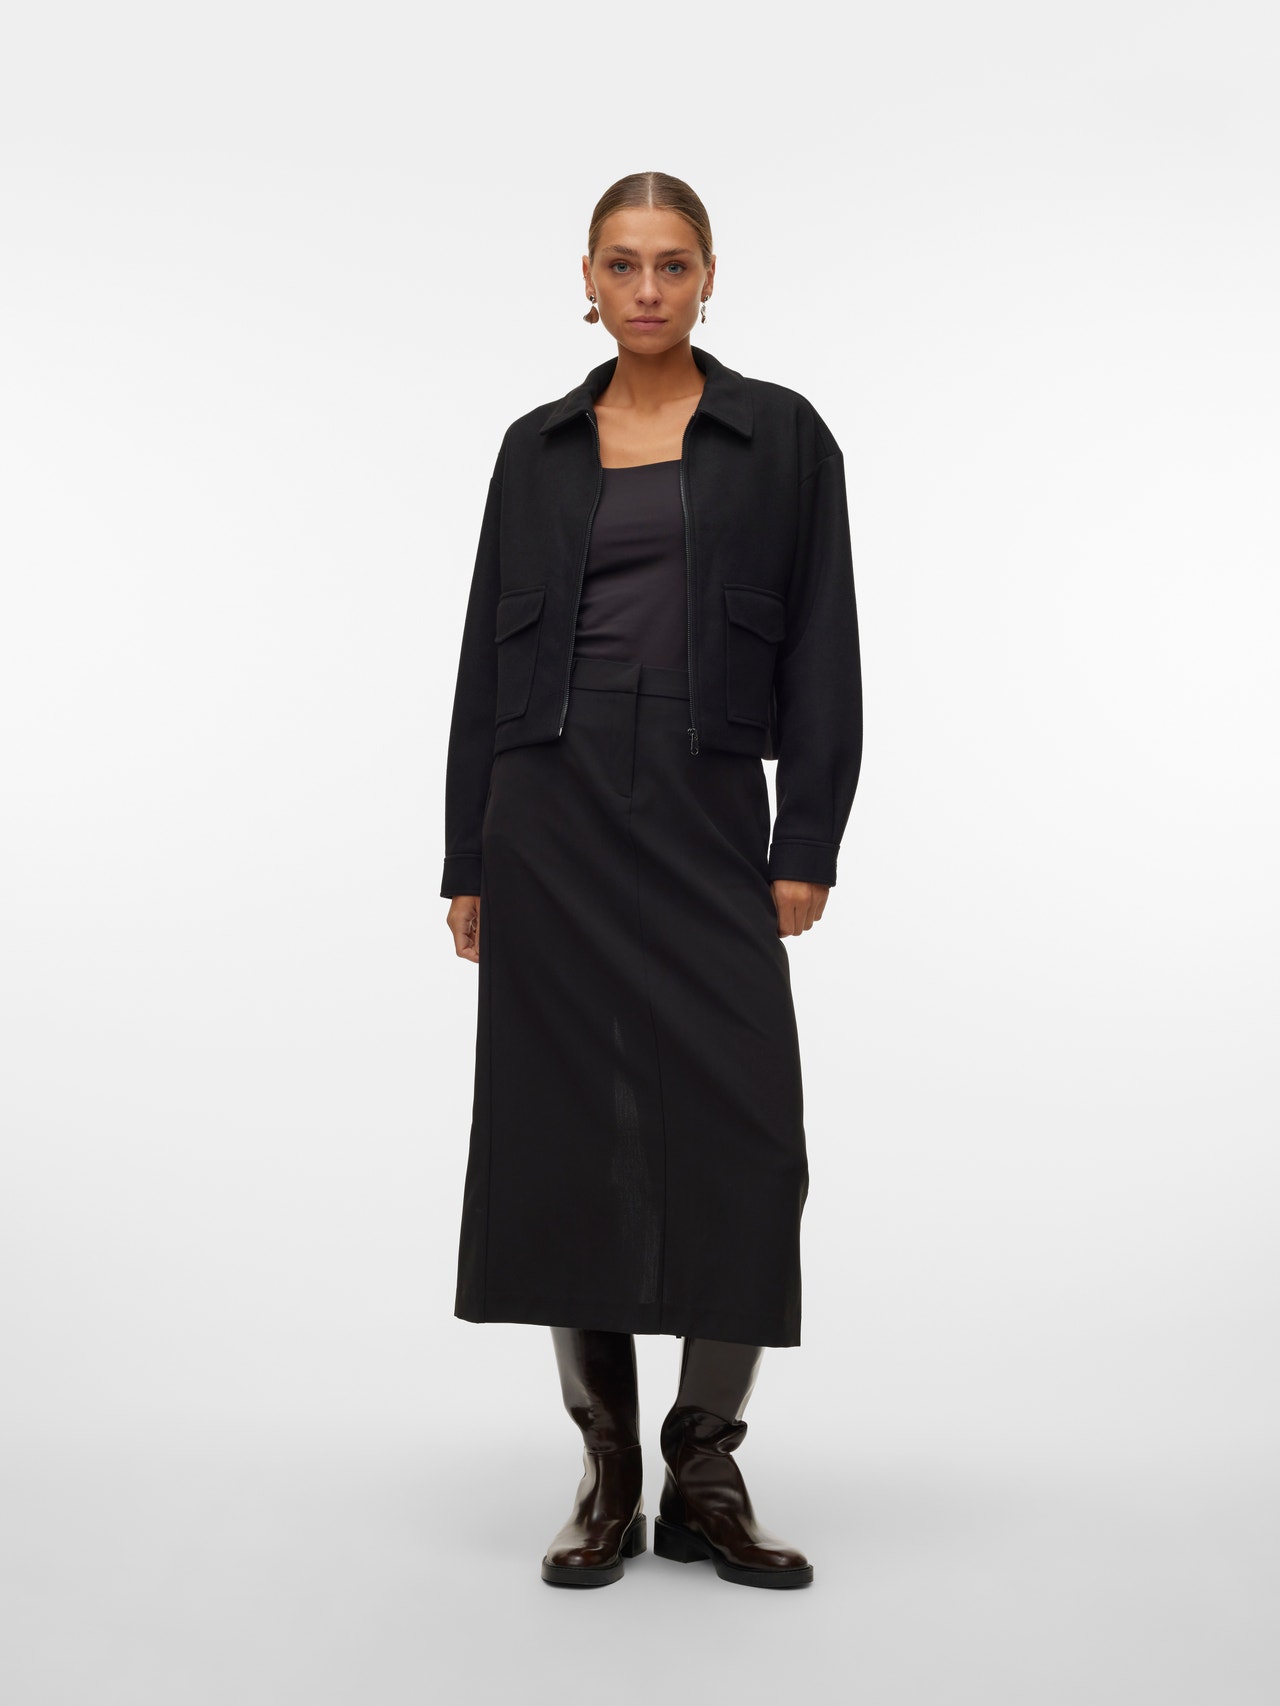 Vero Moda VMTROIAN Long Skirt -Black - 10301729